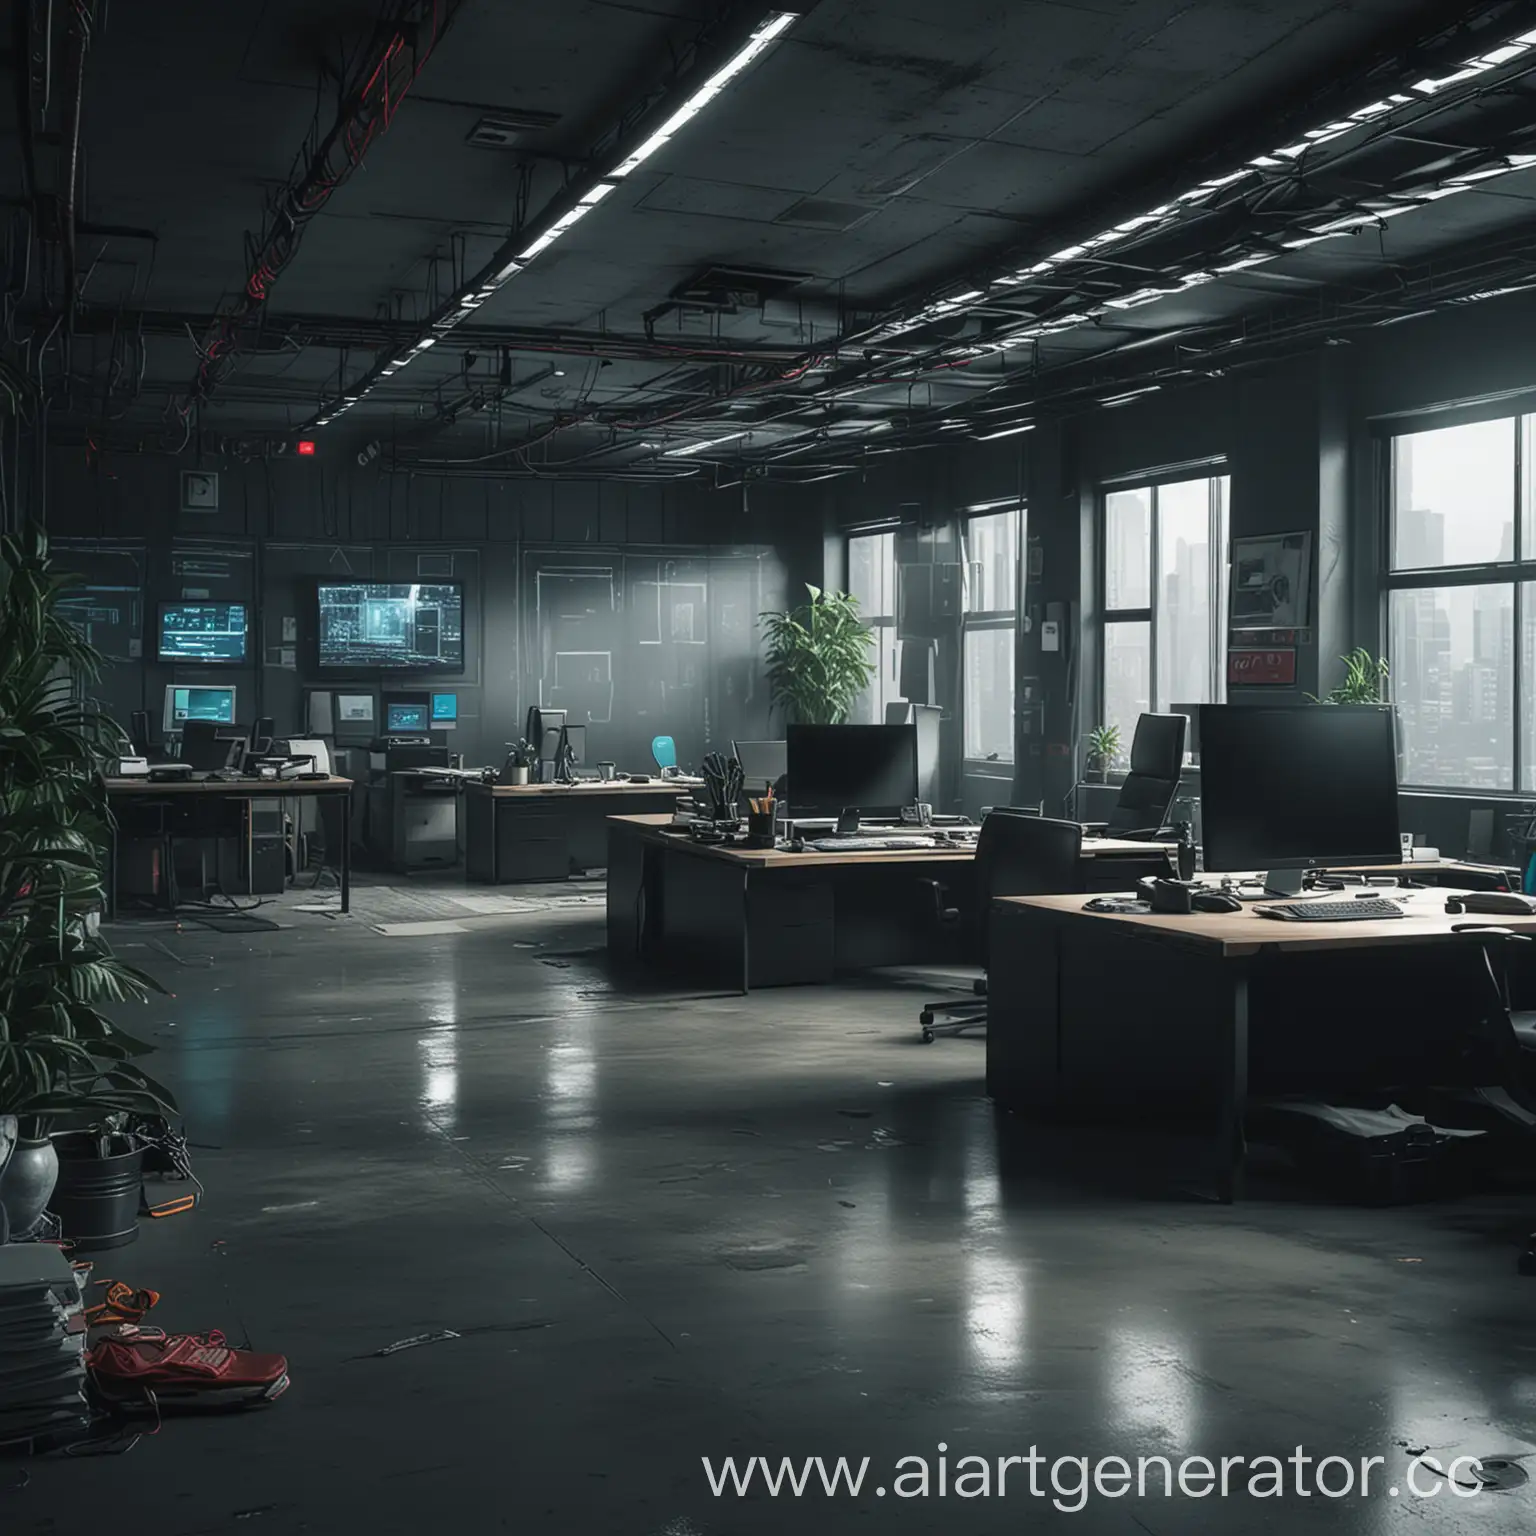 Desolate-Office-Scene-in-Cyberpunk-Style